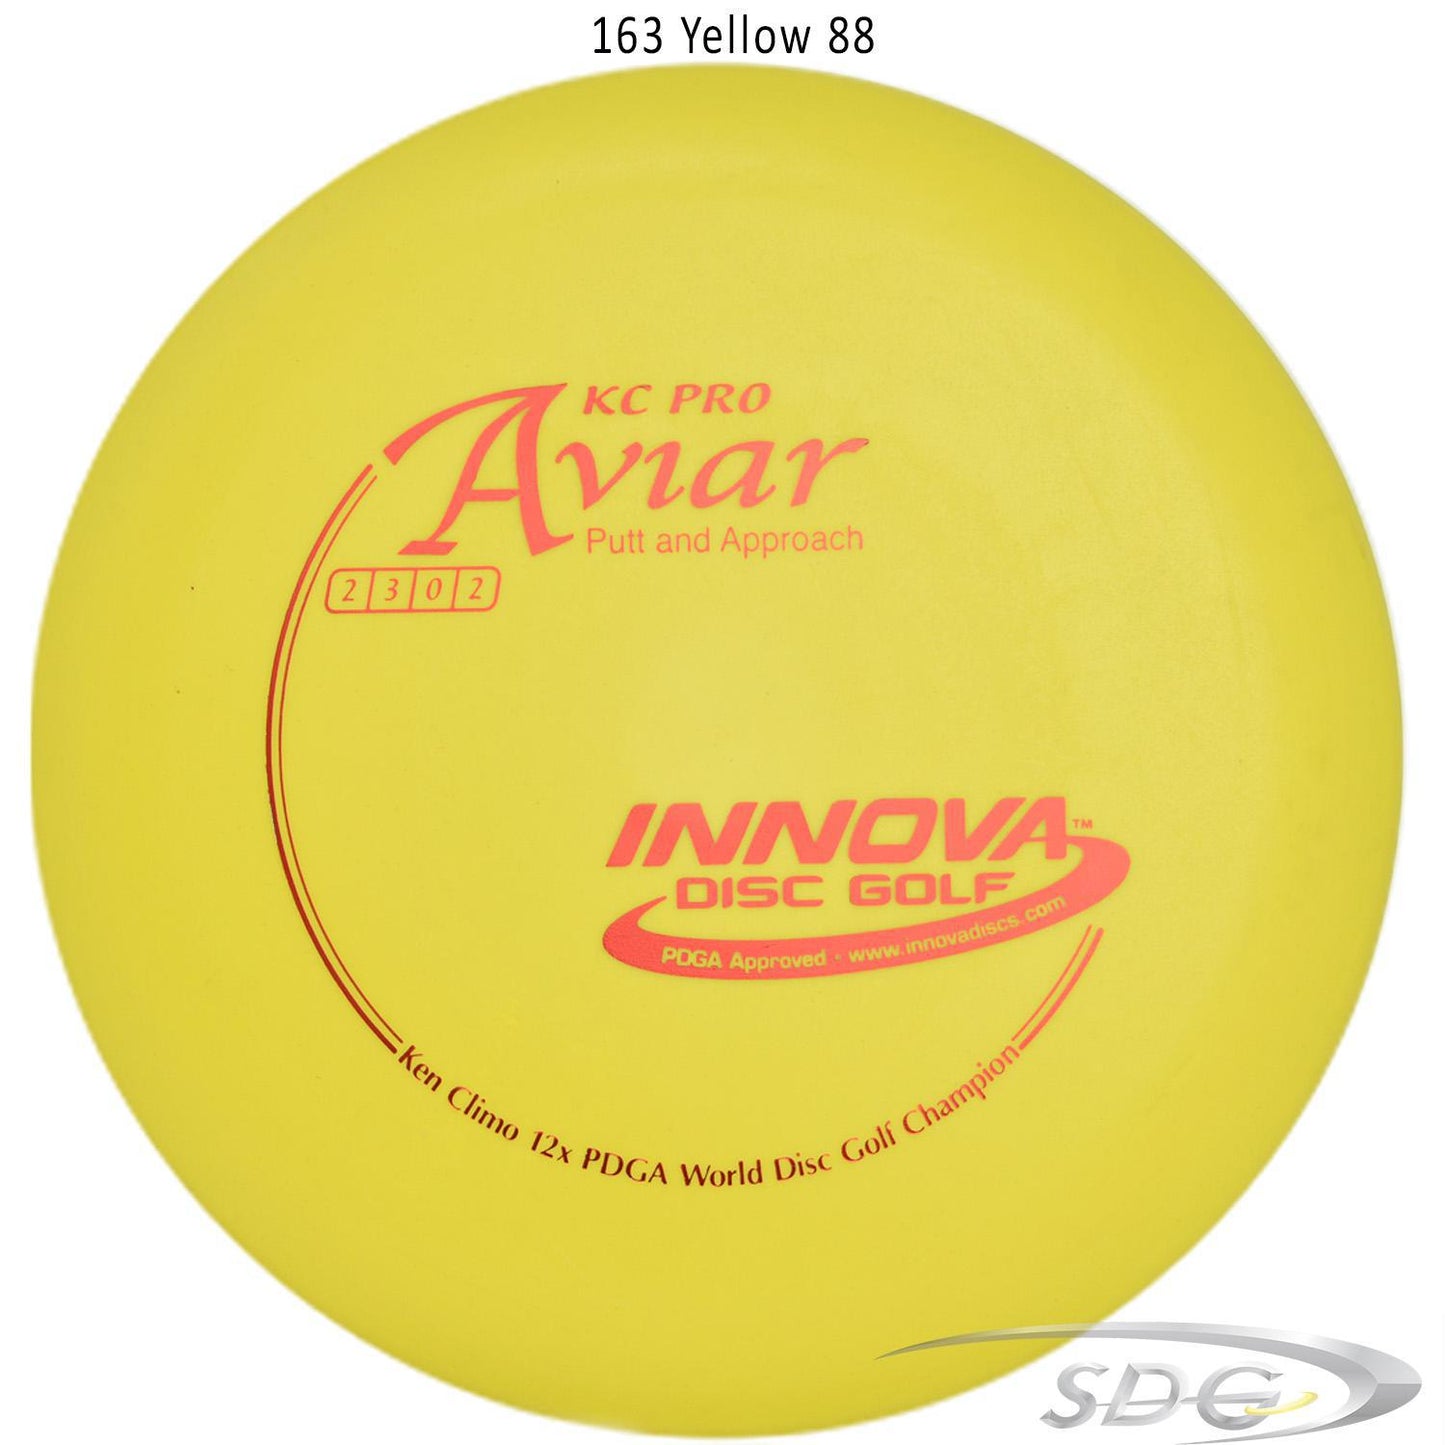 innova-kc-pro-aviar-disc-golf-putter 163 Yellow 88 